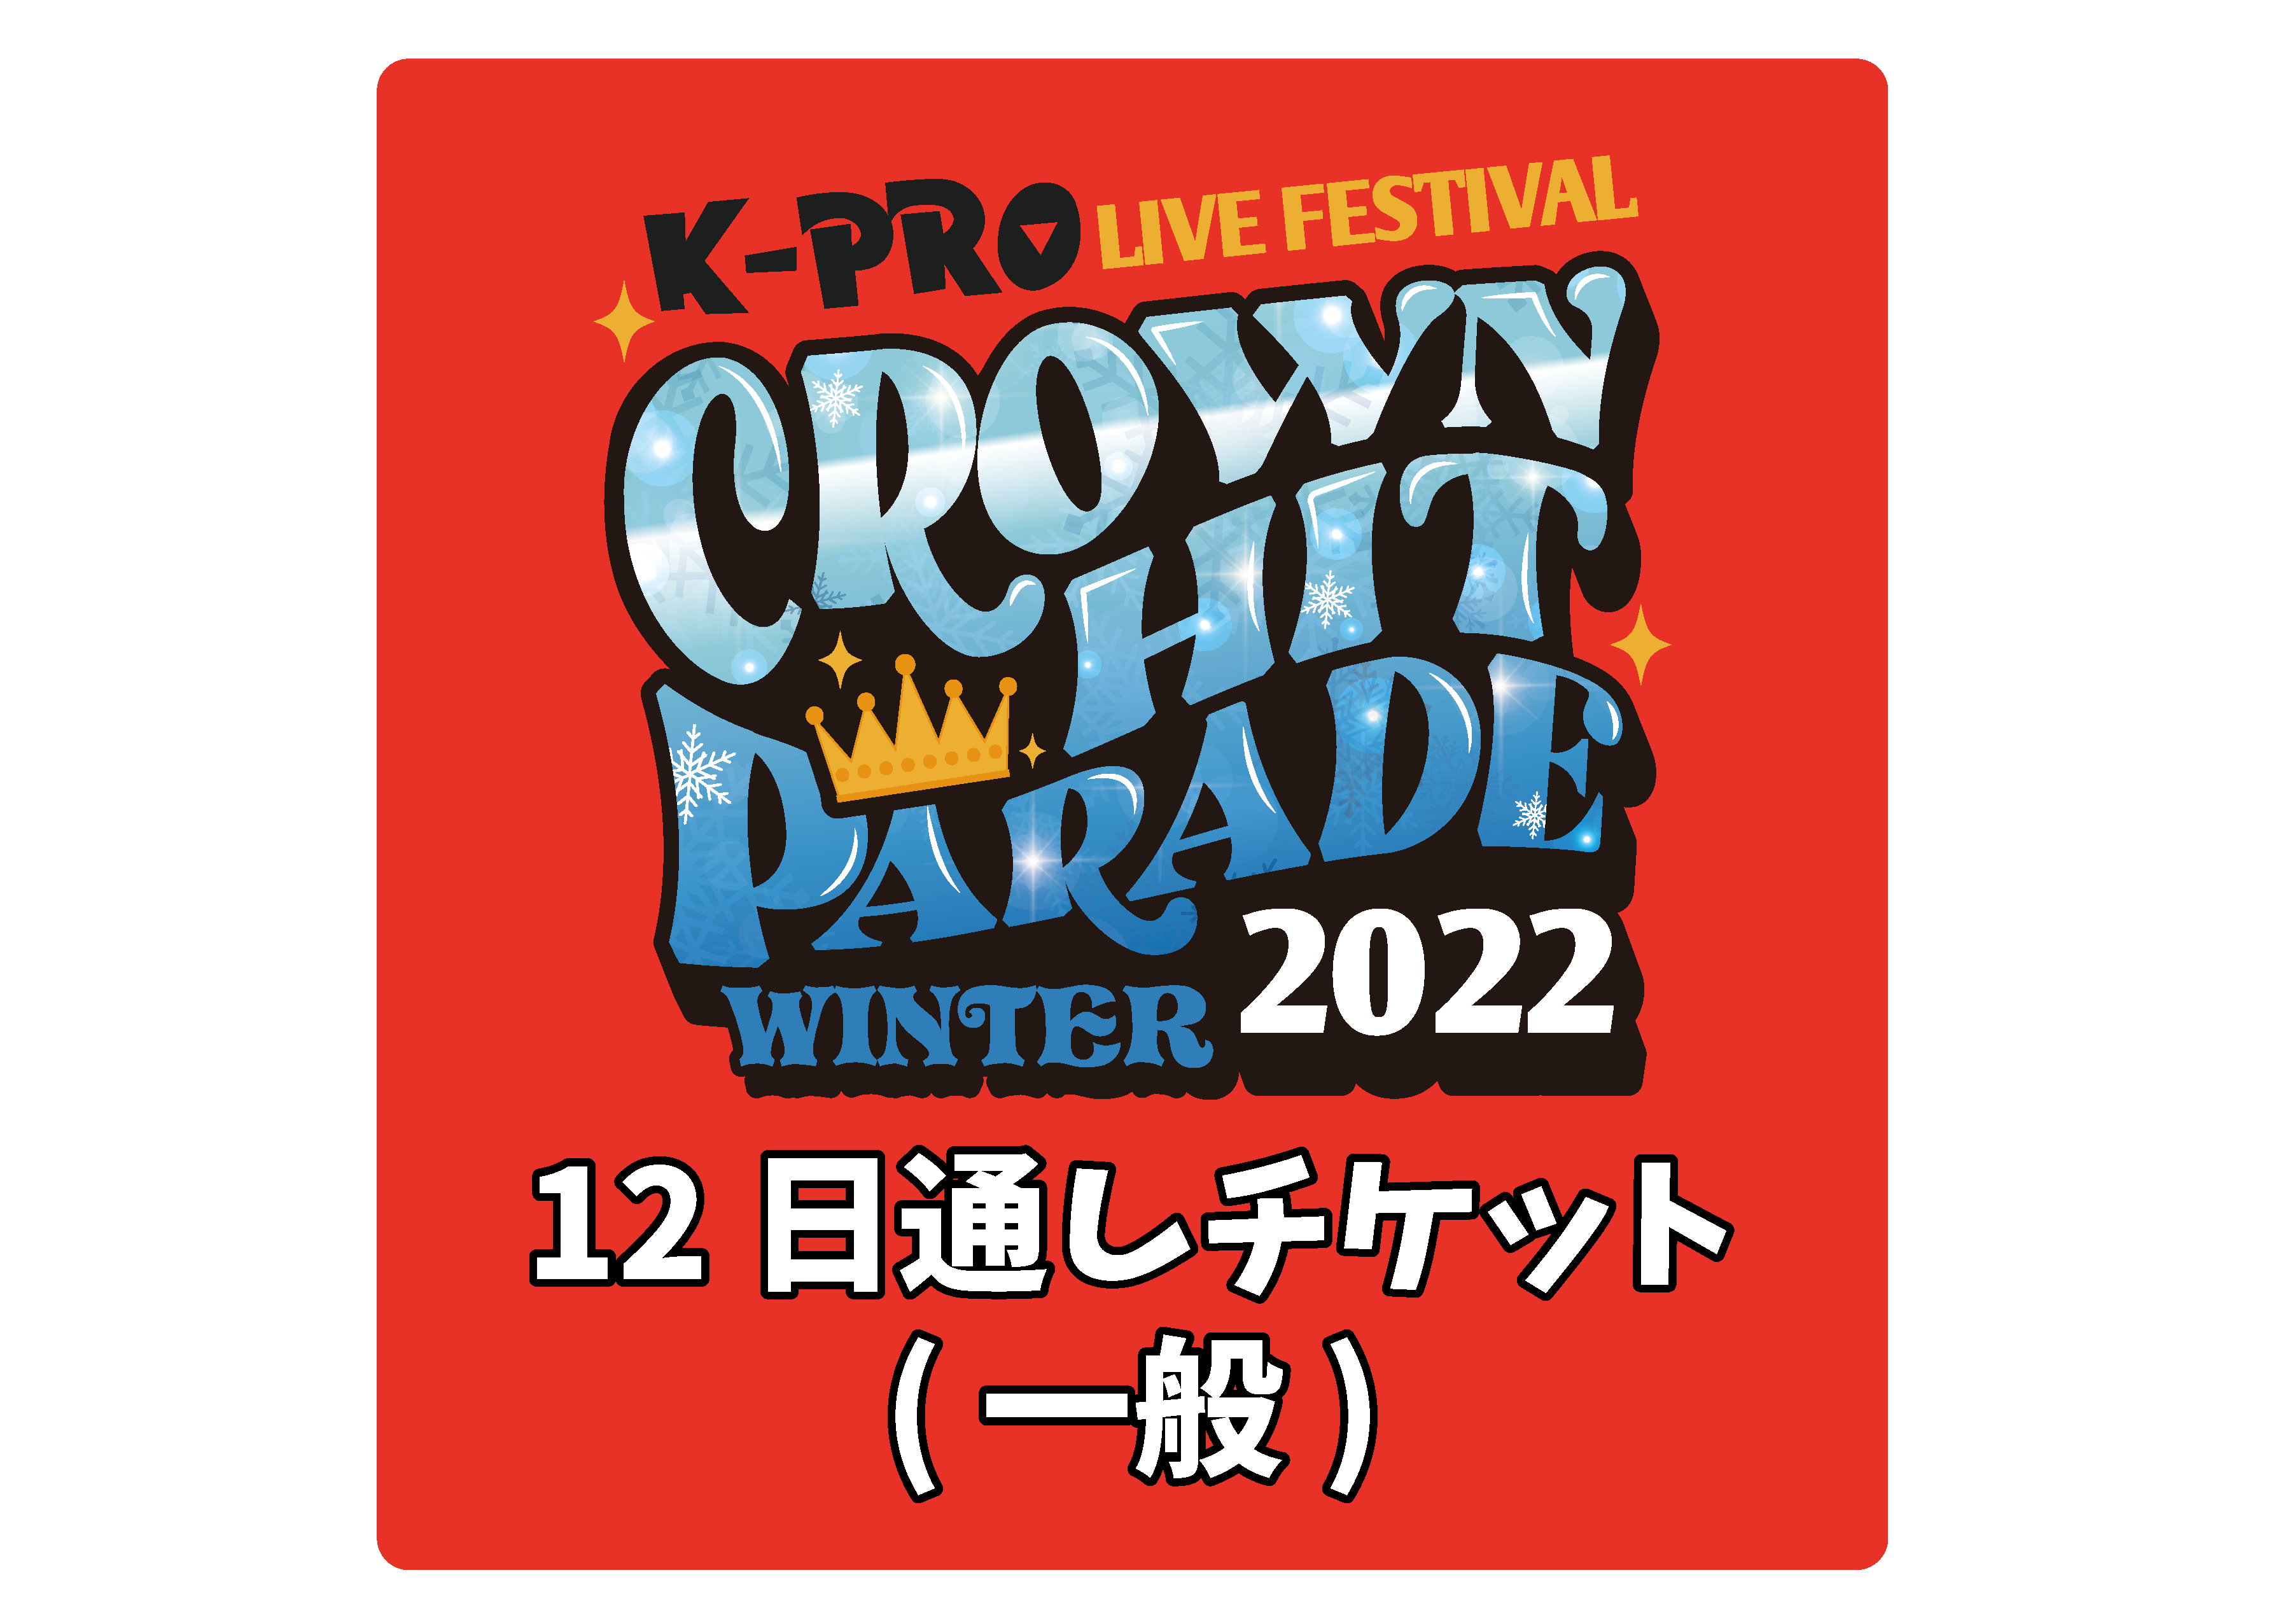 【●2/12通し券】K-PROライブフェスティバル クラウンヒットパレード2022